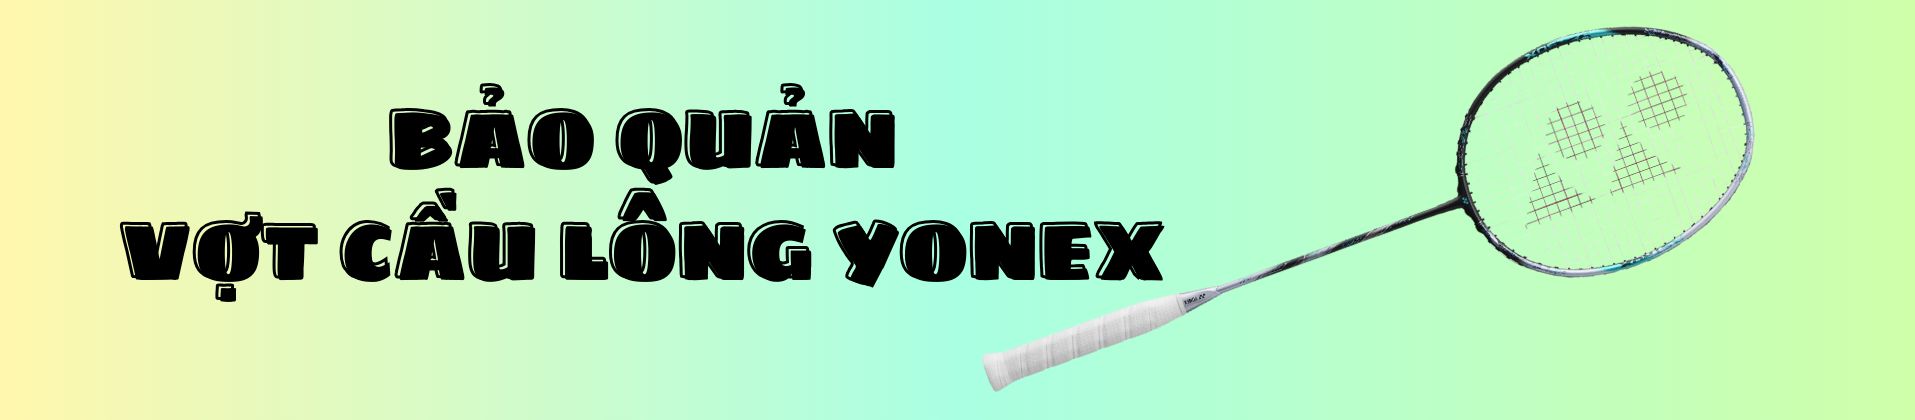 Bí quyết bảo quản vợt cầu lông Yonex bền bỉ như mới